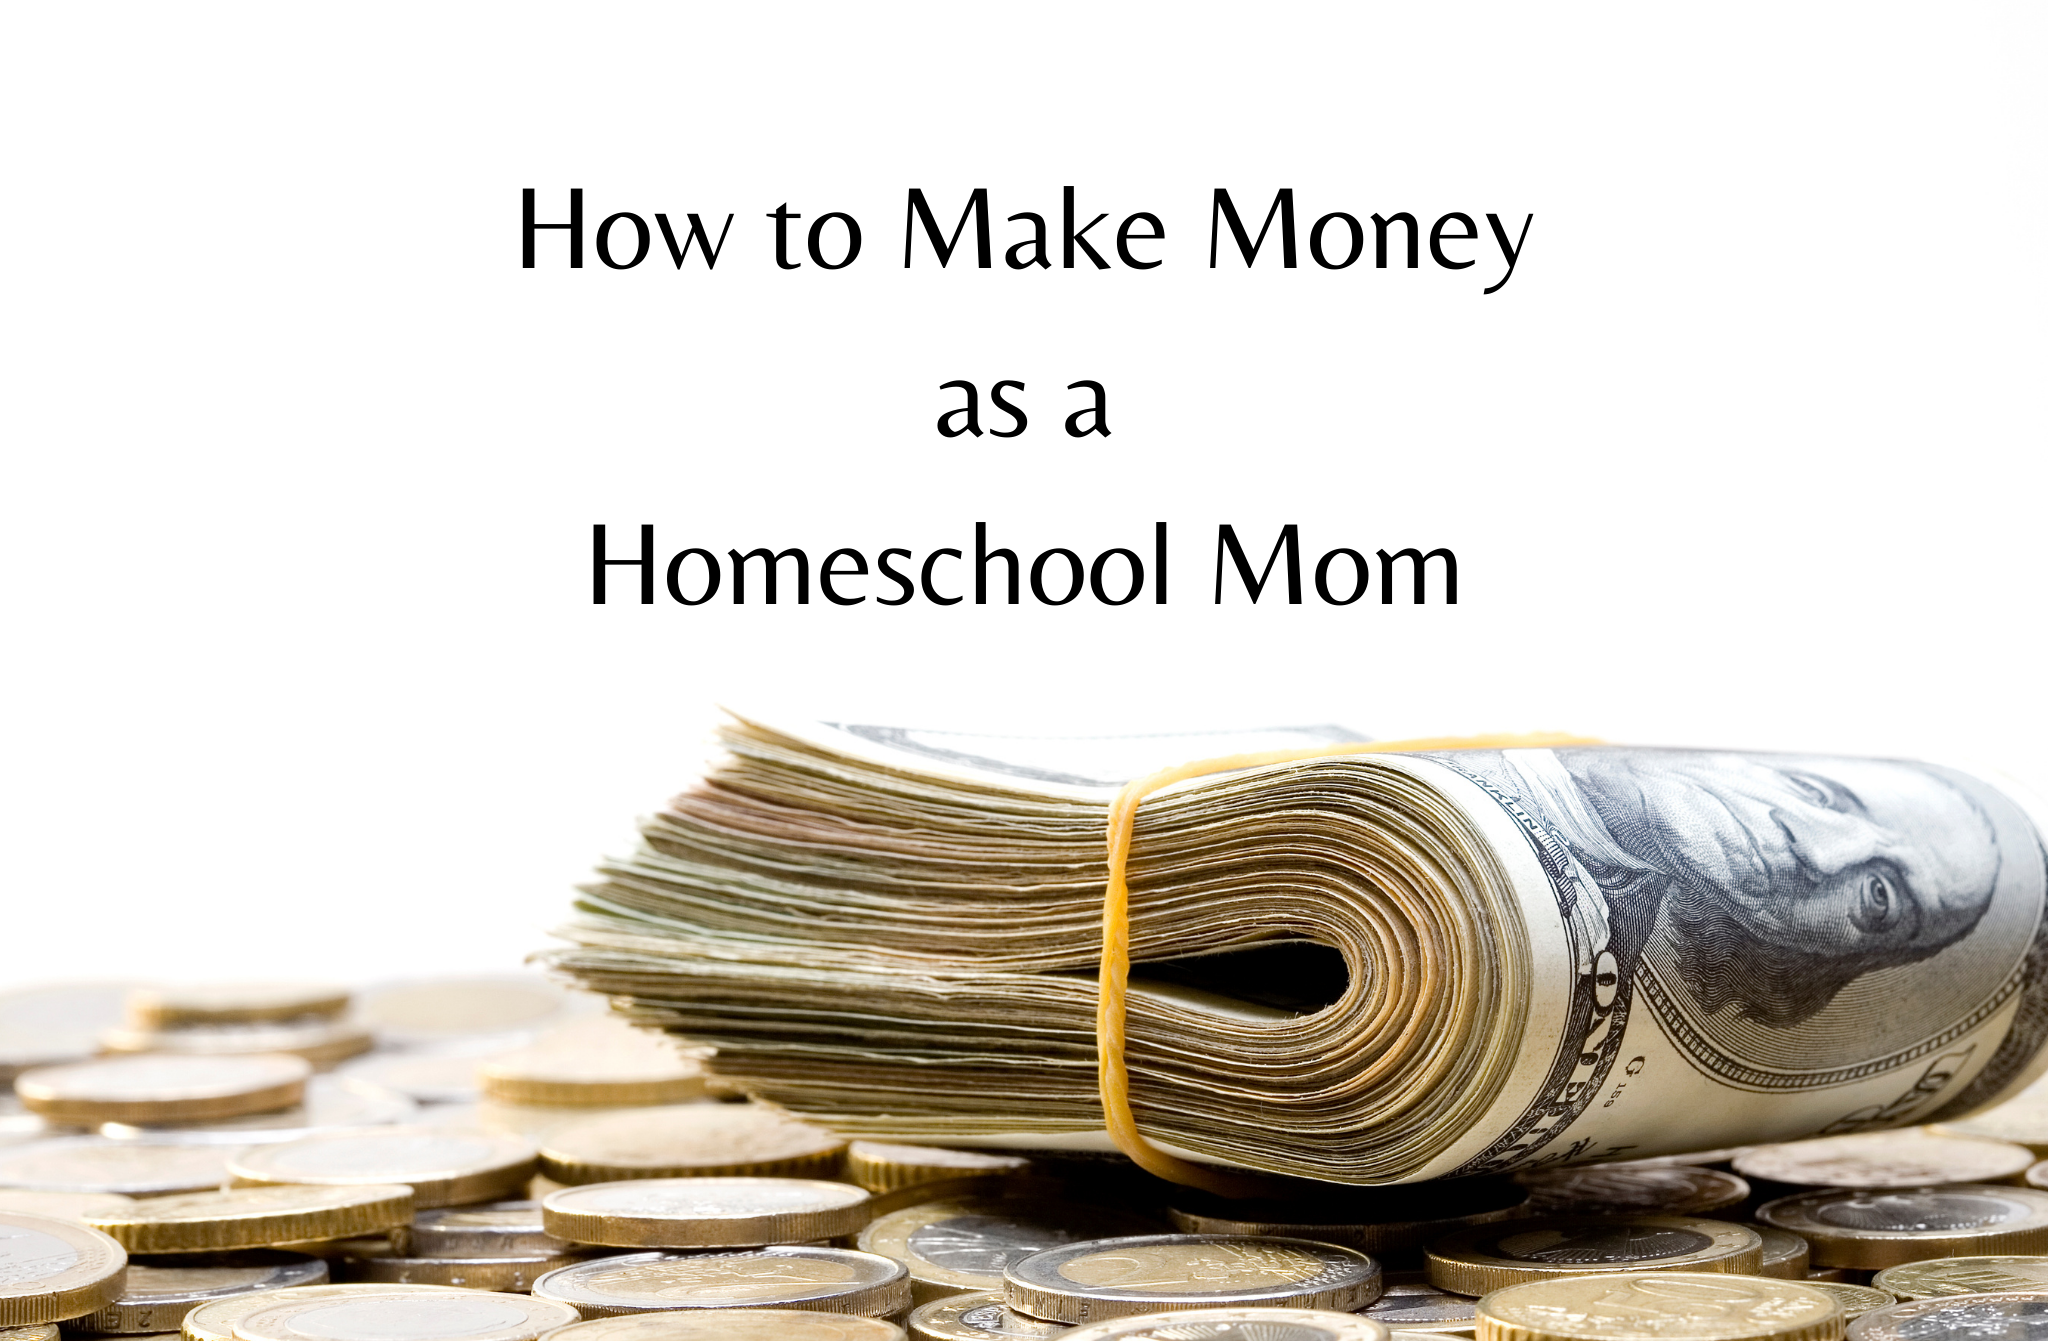 How to Make Money as a Homeschool Mom